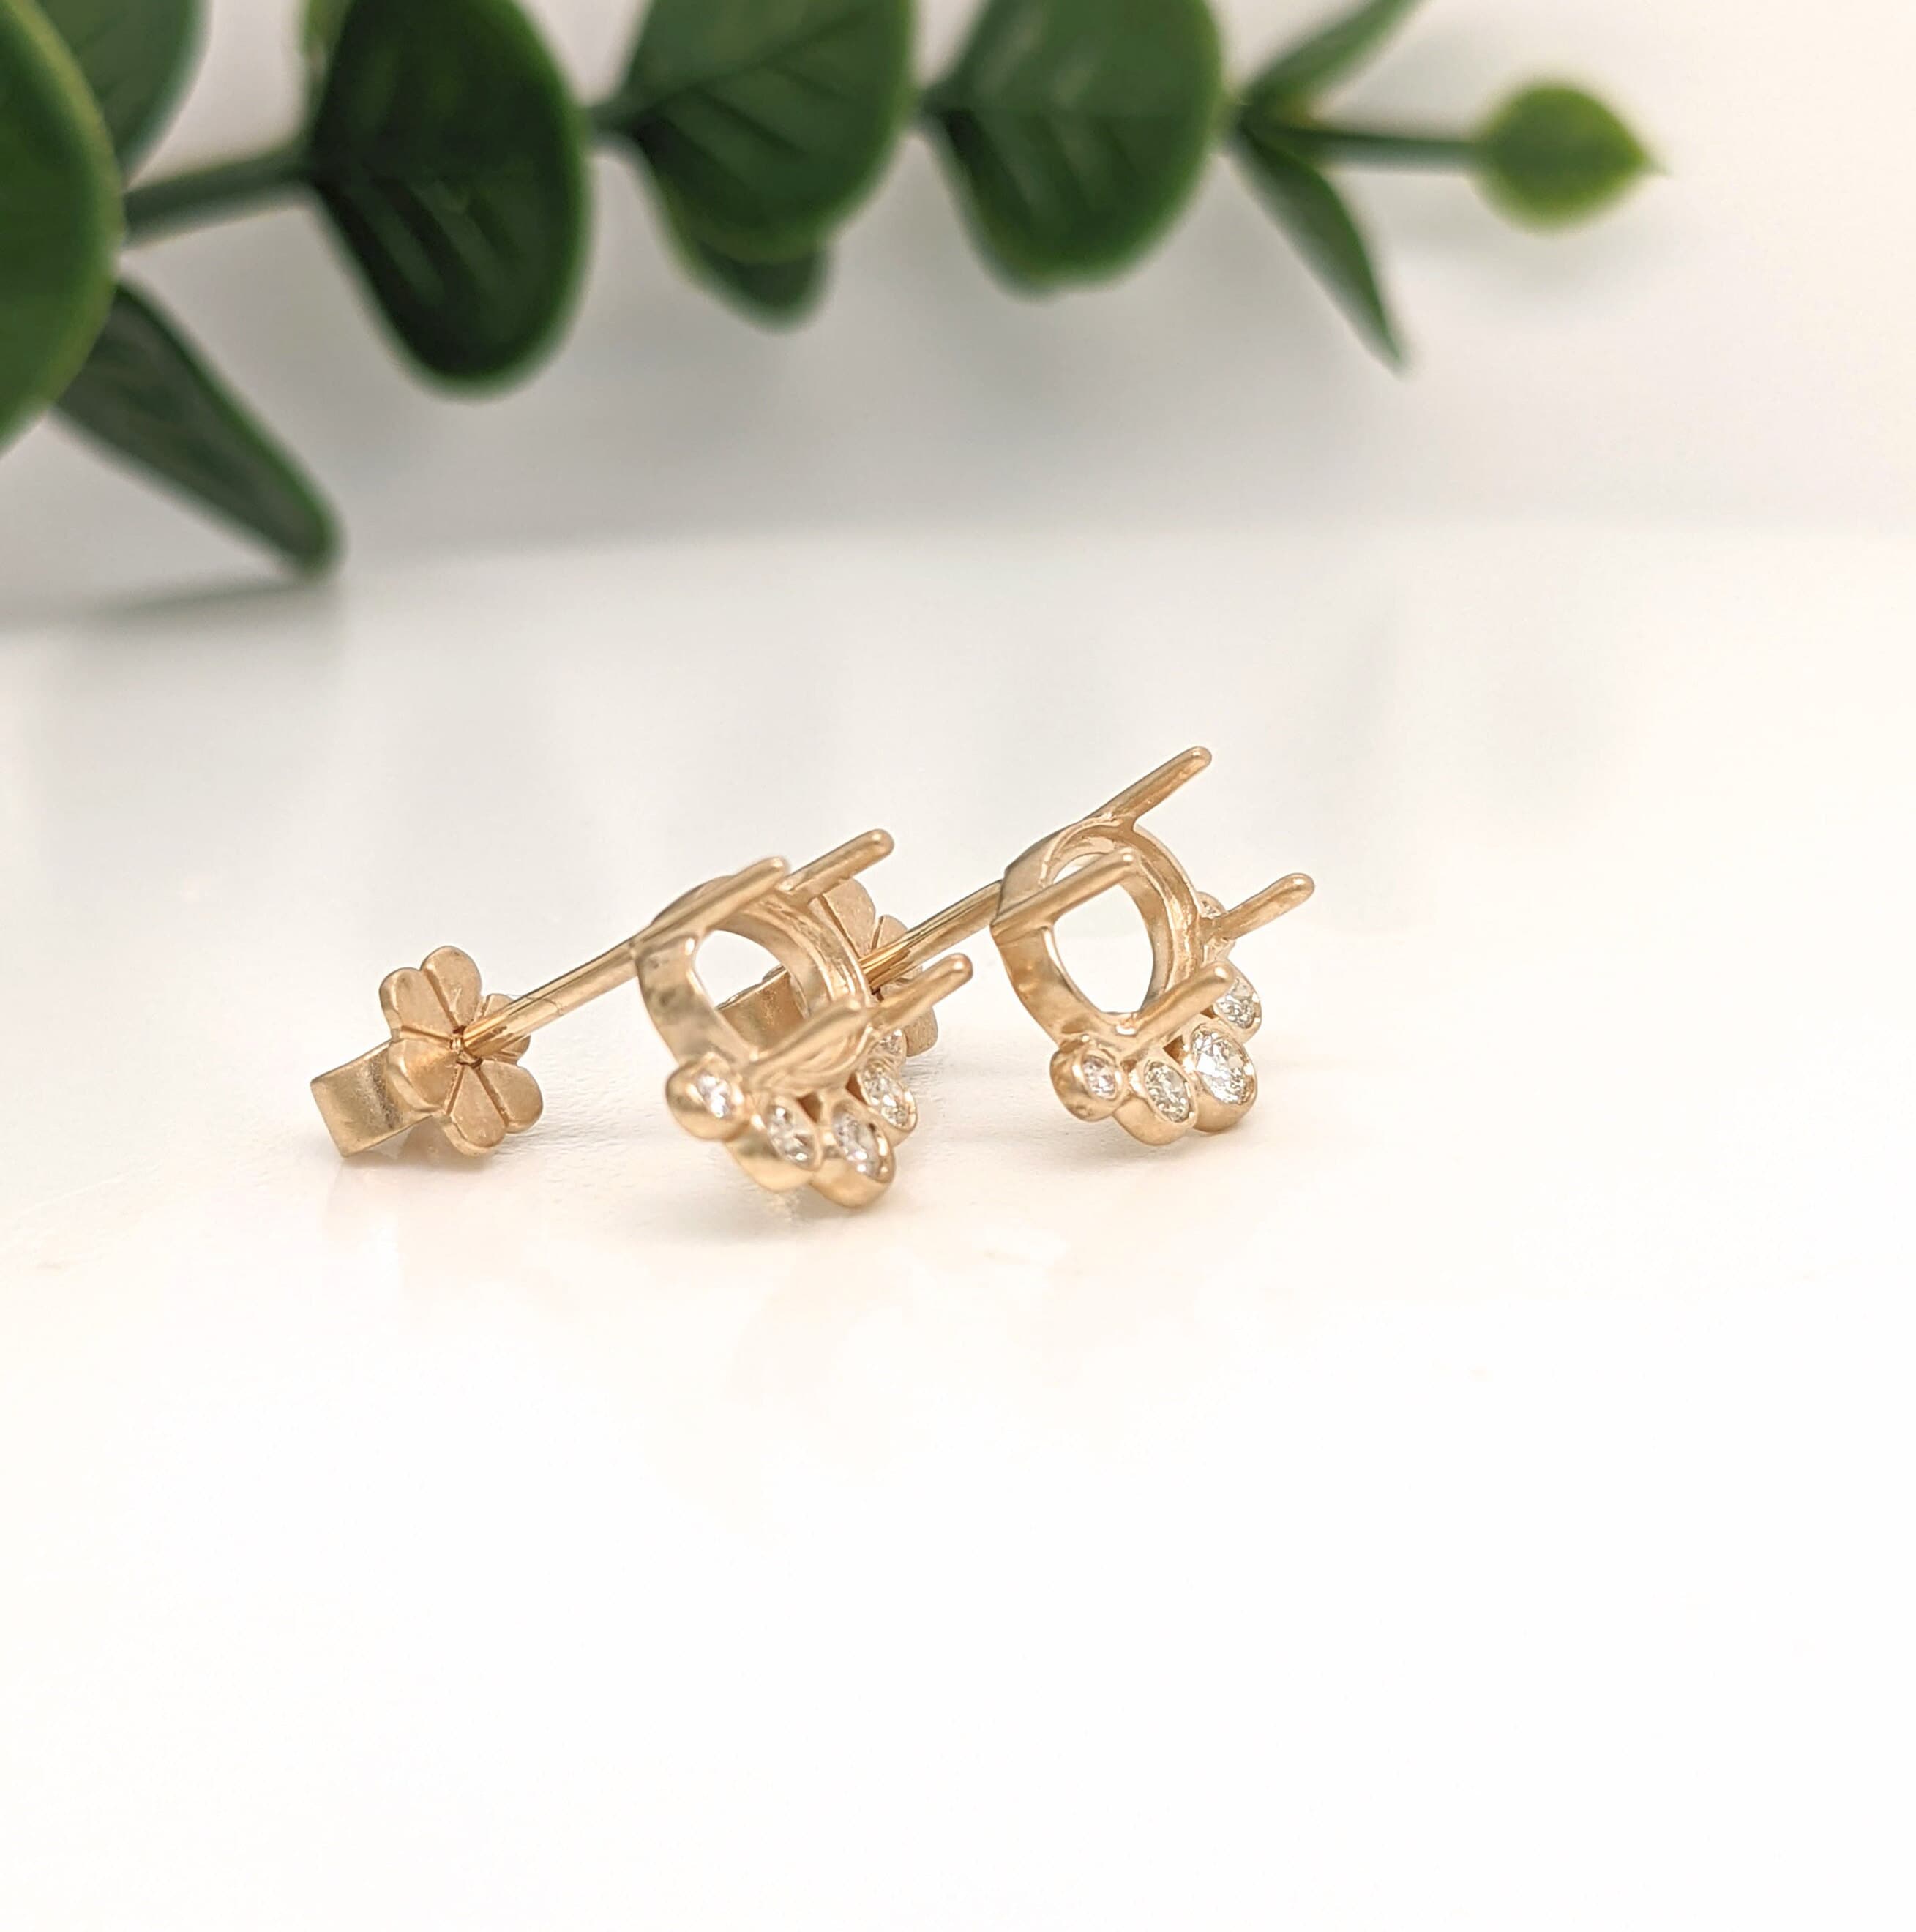 Stud Earrings-Cute Daily Wear Earring Stud Semi Mount in 14K Matte Gold w Bezel Set Graduated Diamond Accents | Oval 7x5mm Cabochon | Matte or Polish Gold - NNJGemstones